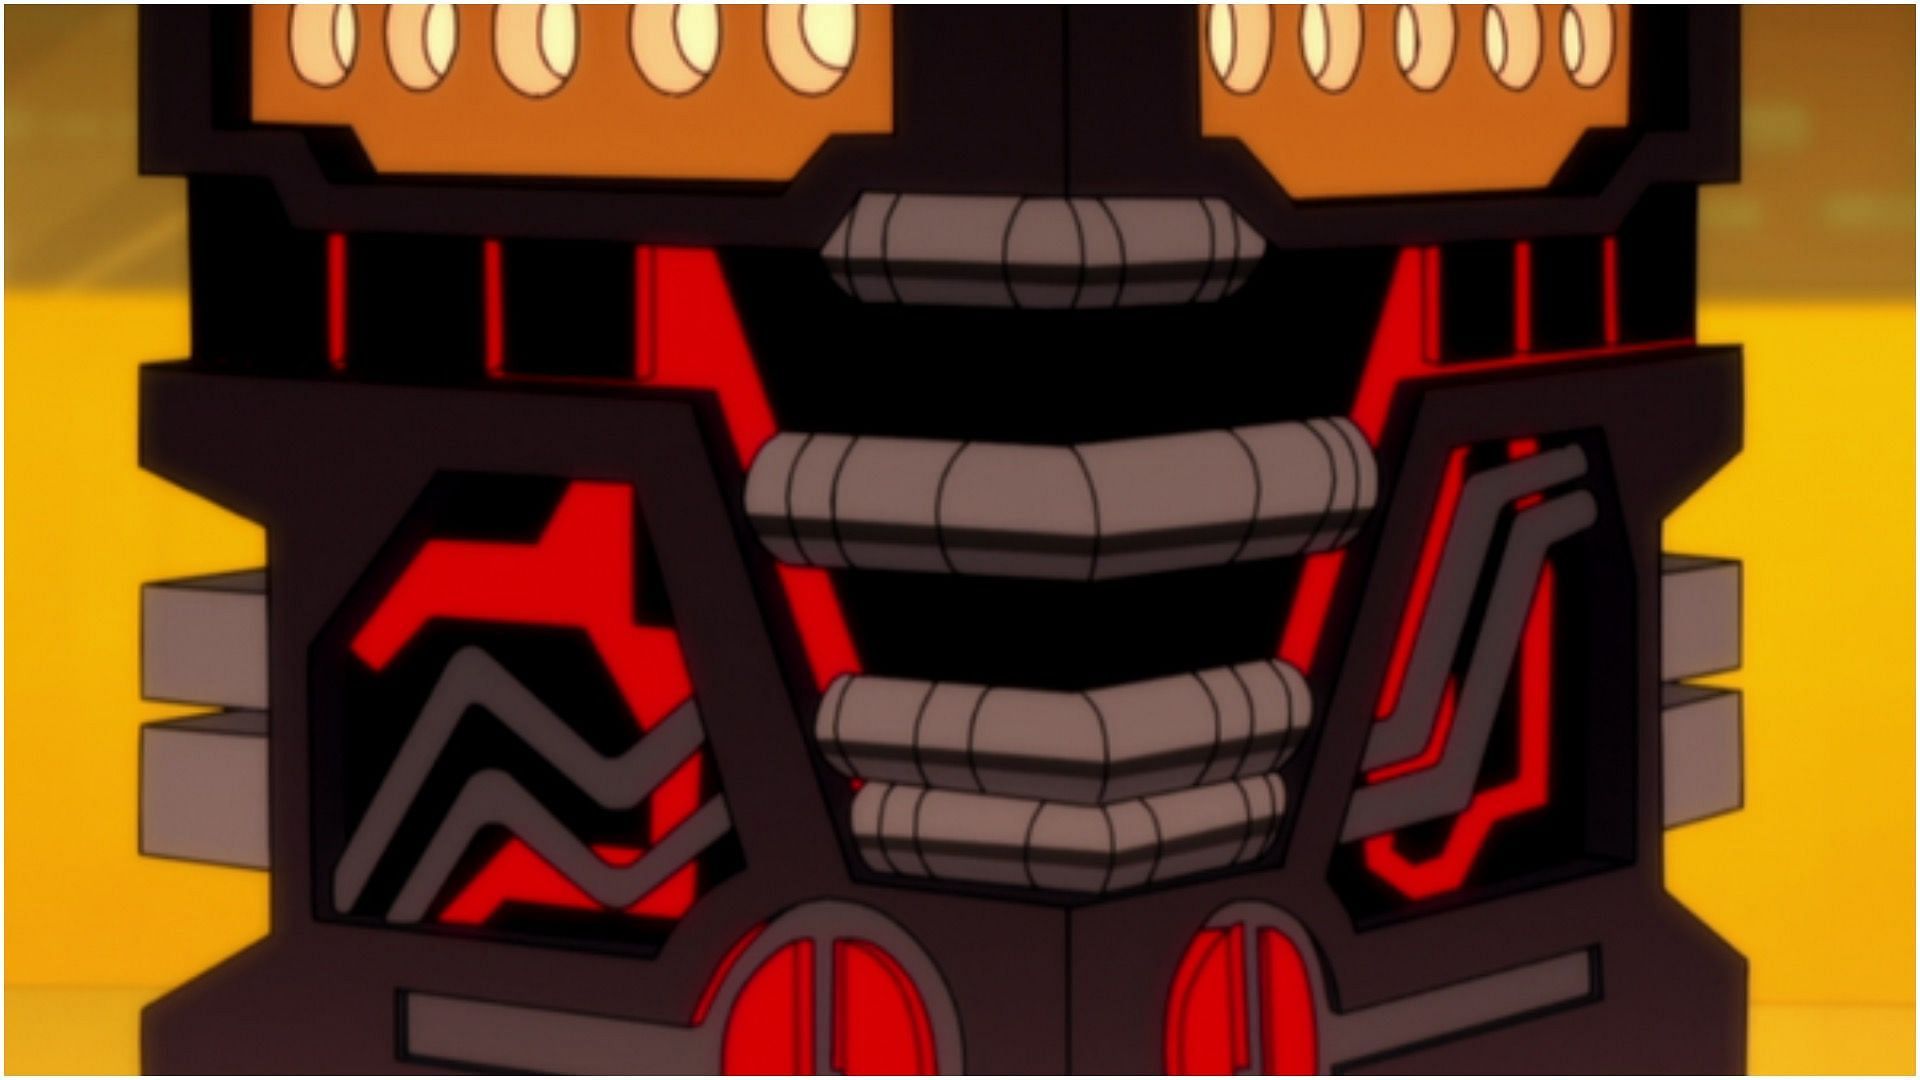 Kaizer-Thrall (Image via Warner Bros. Animations)